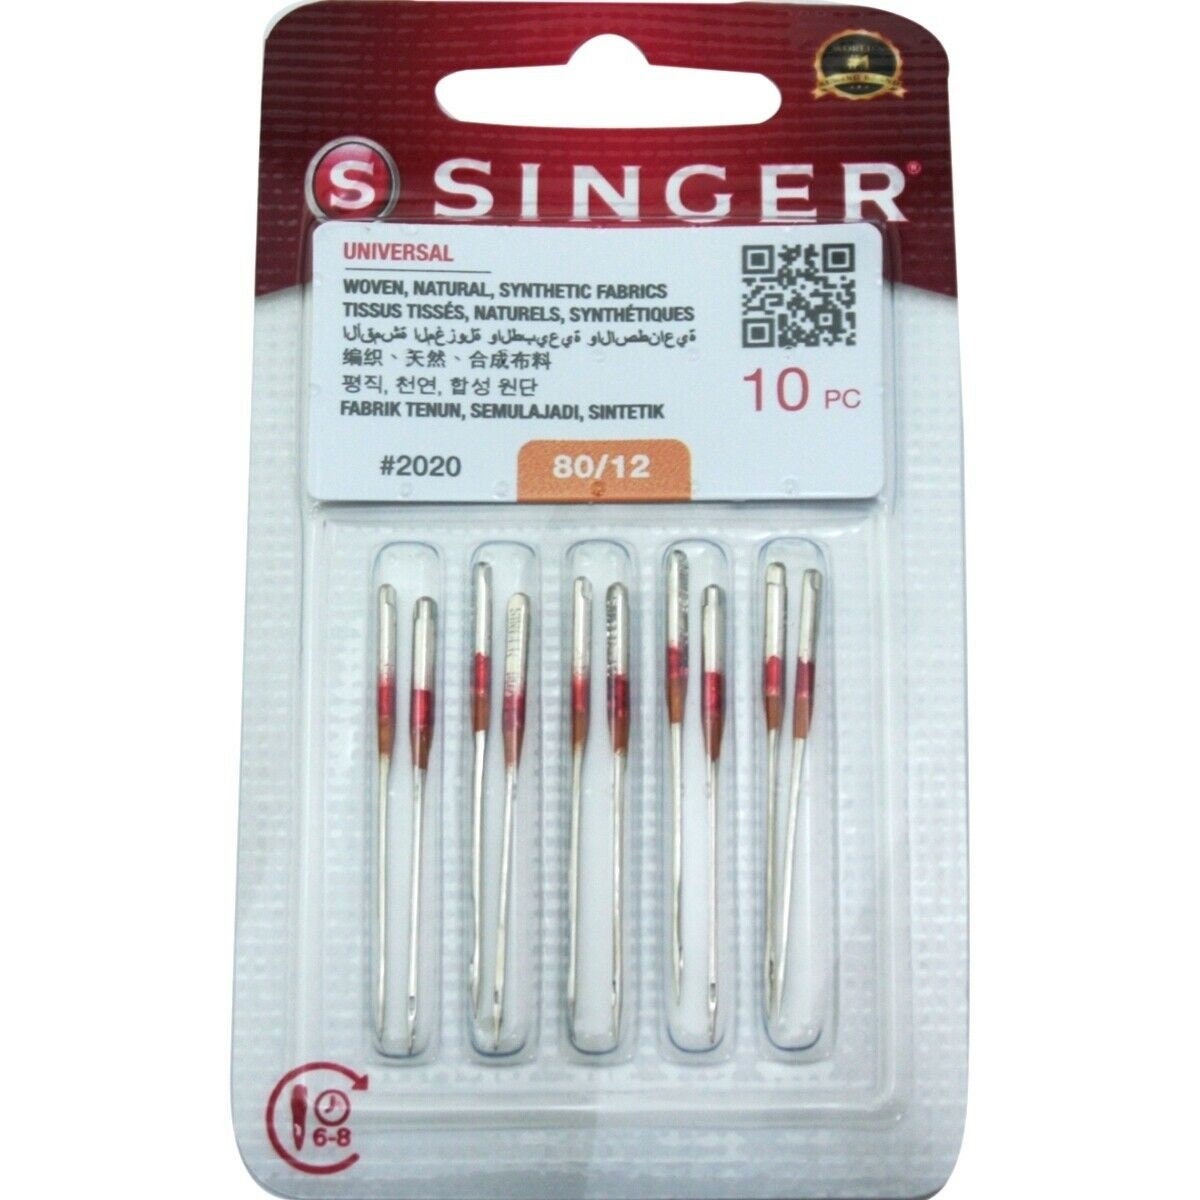 50 Needles Singer Sewing Machine Needles, 2020 Sizes 9,11,14,16,18 